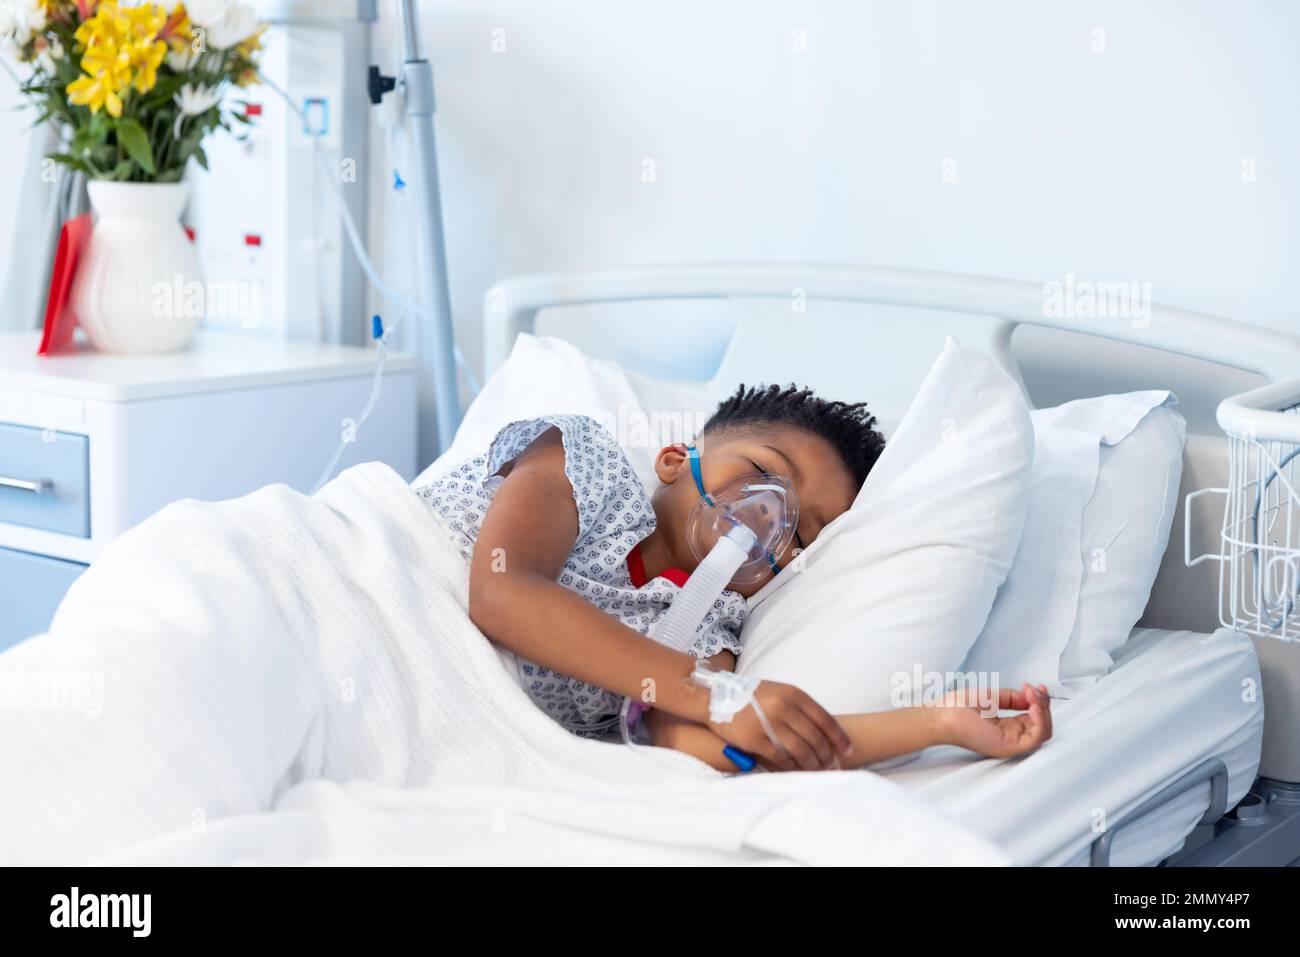 Un garçon afro-américain sous ventilation endormi dans un lit d'hôpital avec espace de copie Banque D'Images